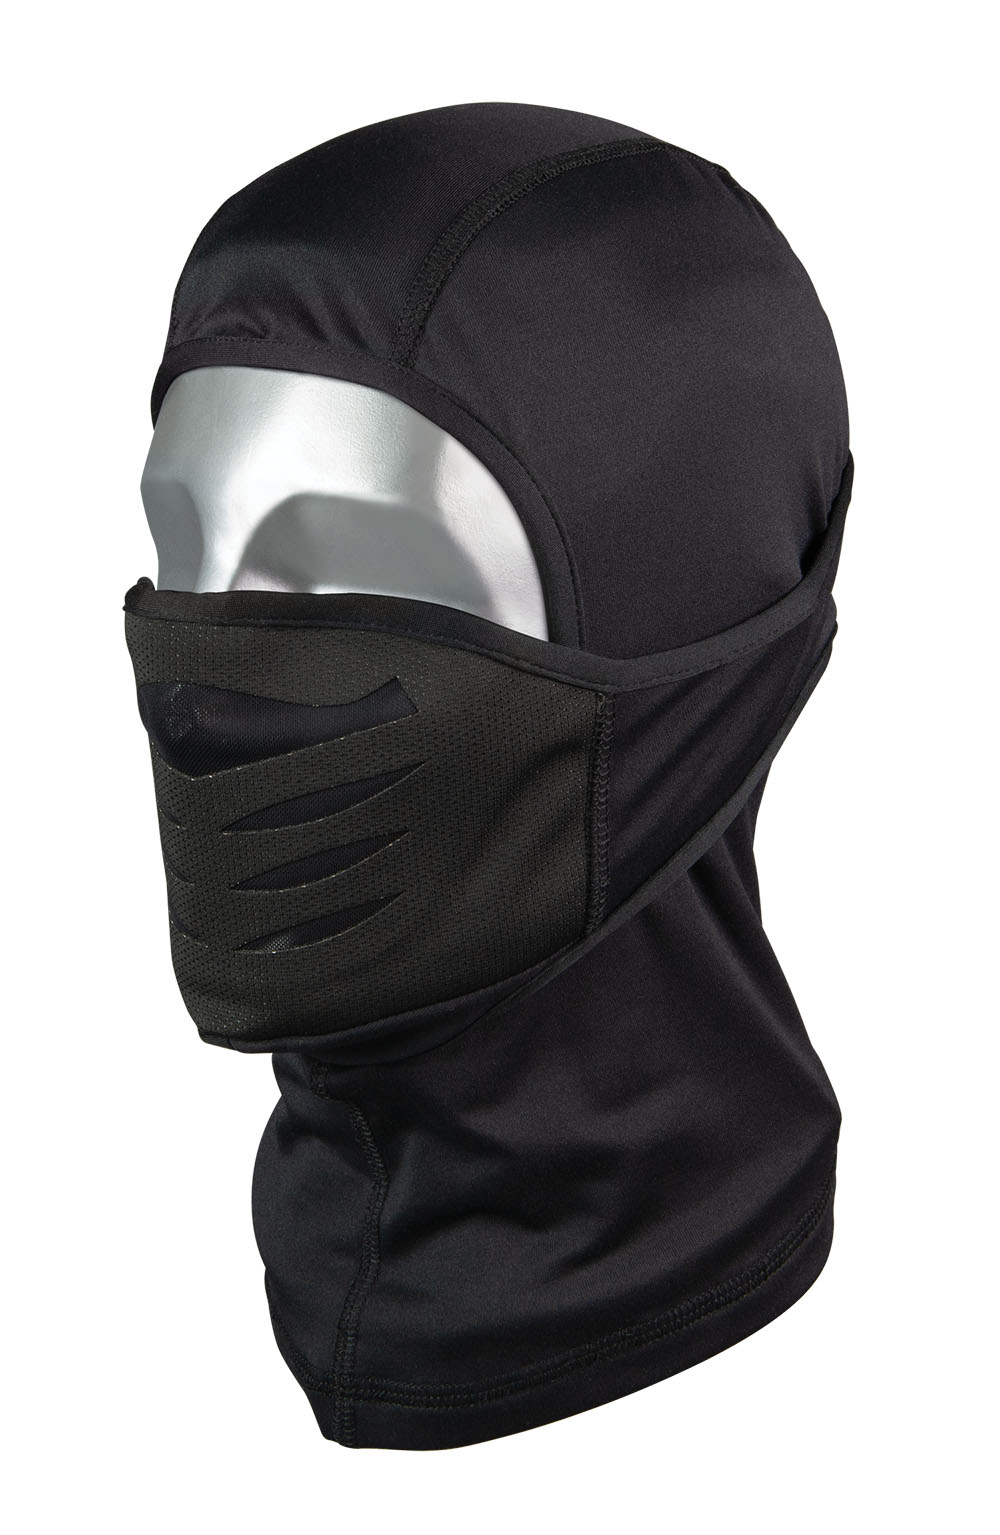 Snowmageddon Black Mask/Liner with Adjustable Face Shield - Facemasks